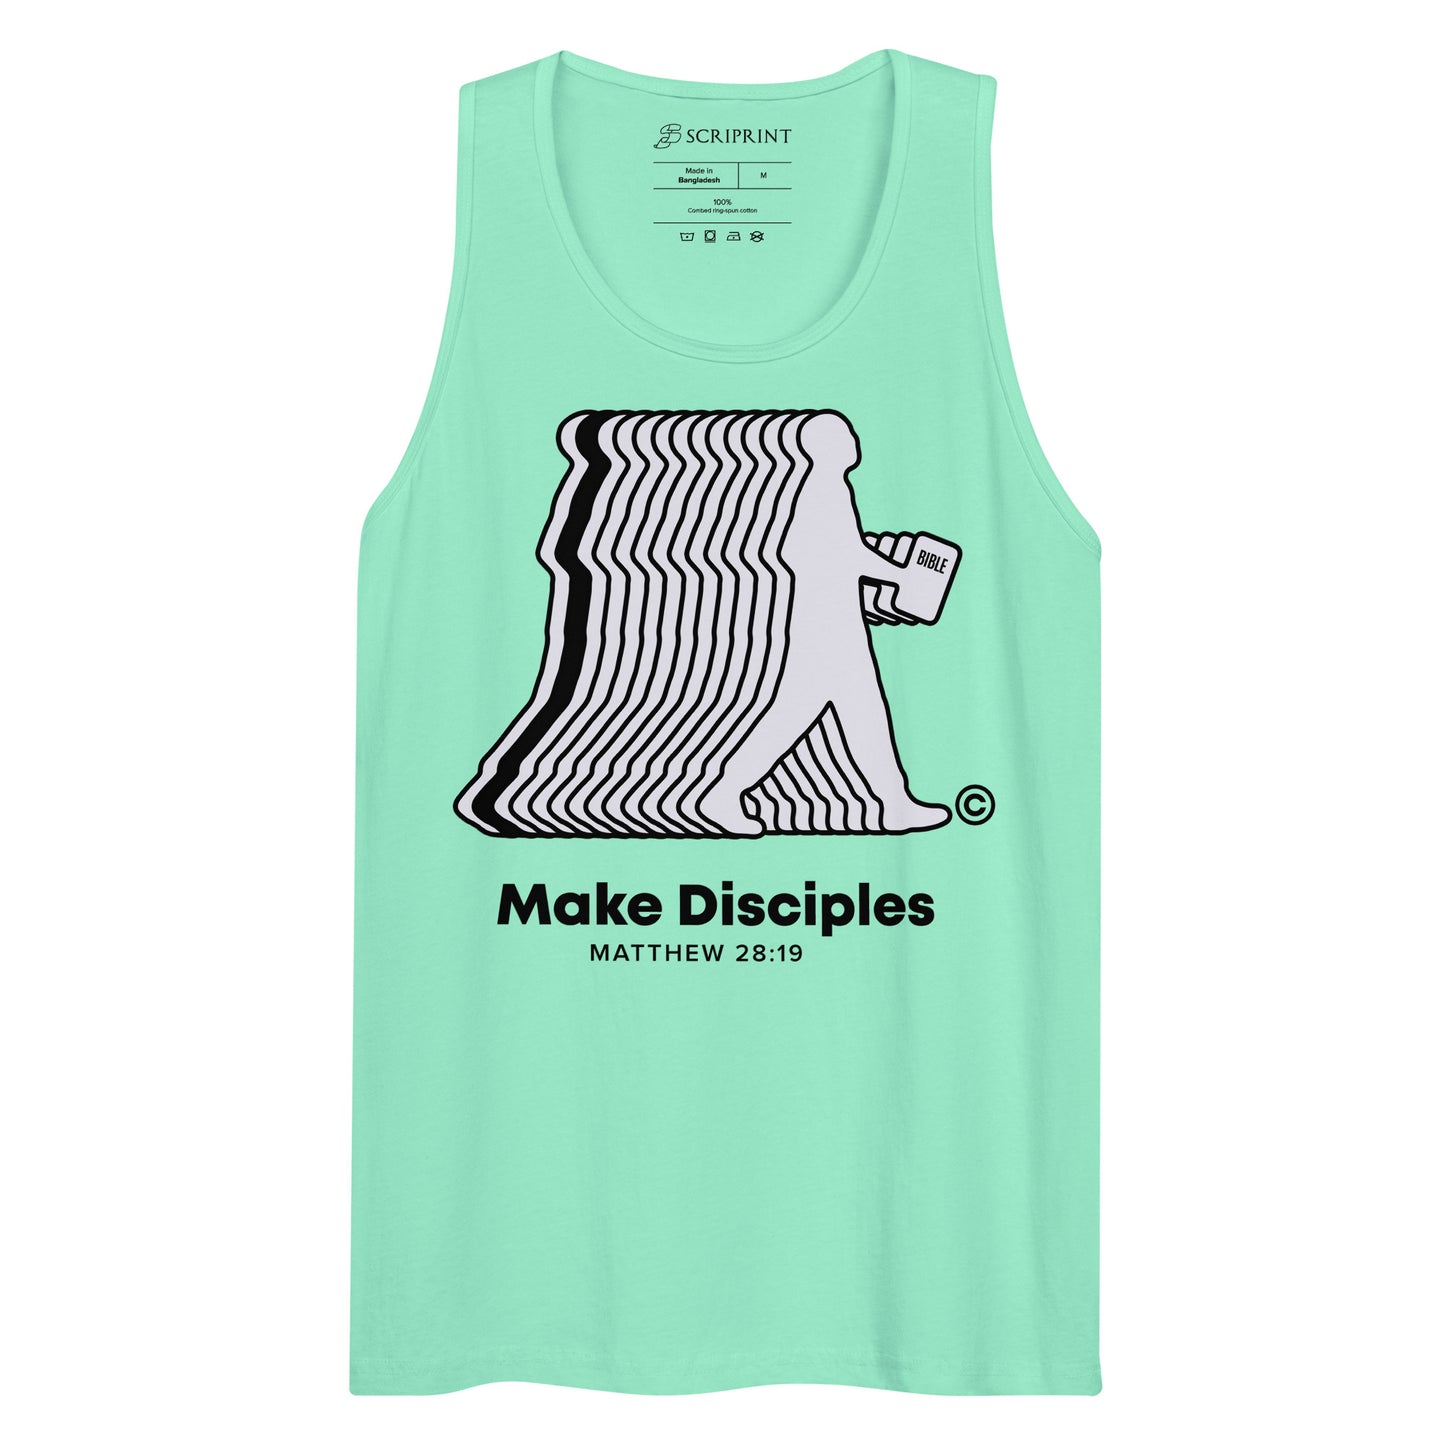 Make Disciples Men’s Premium Tank Top